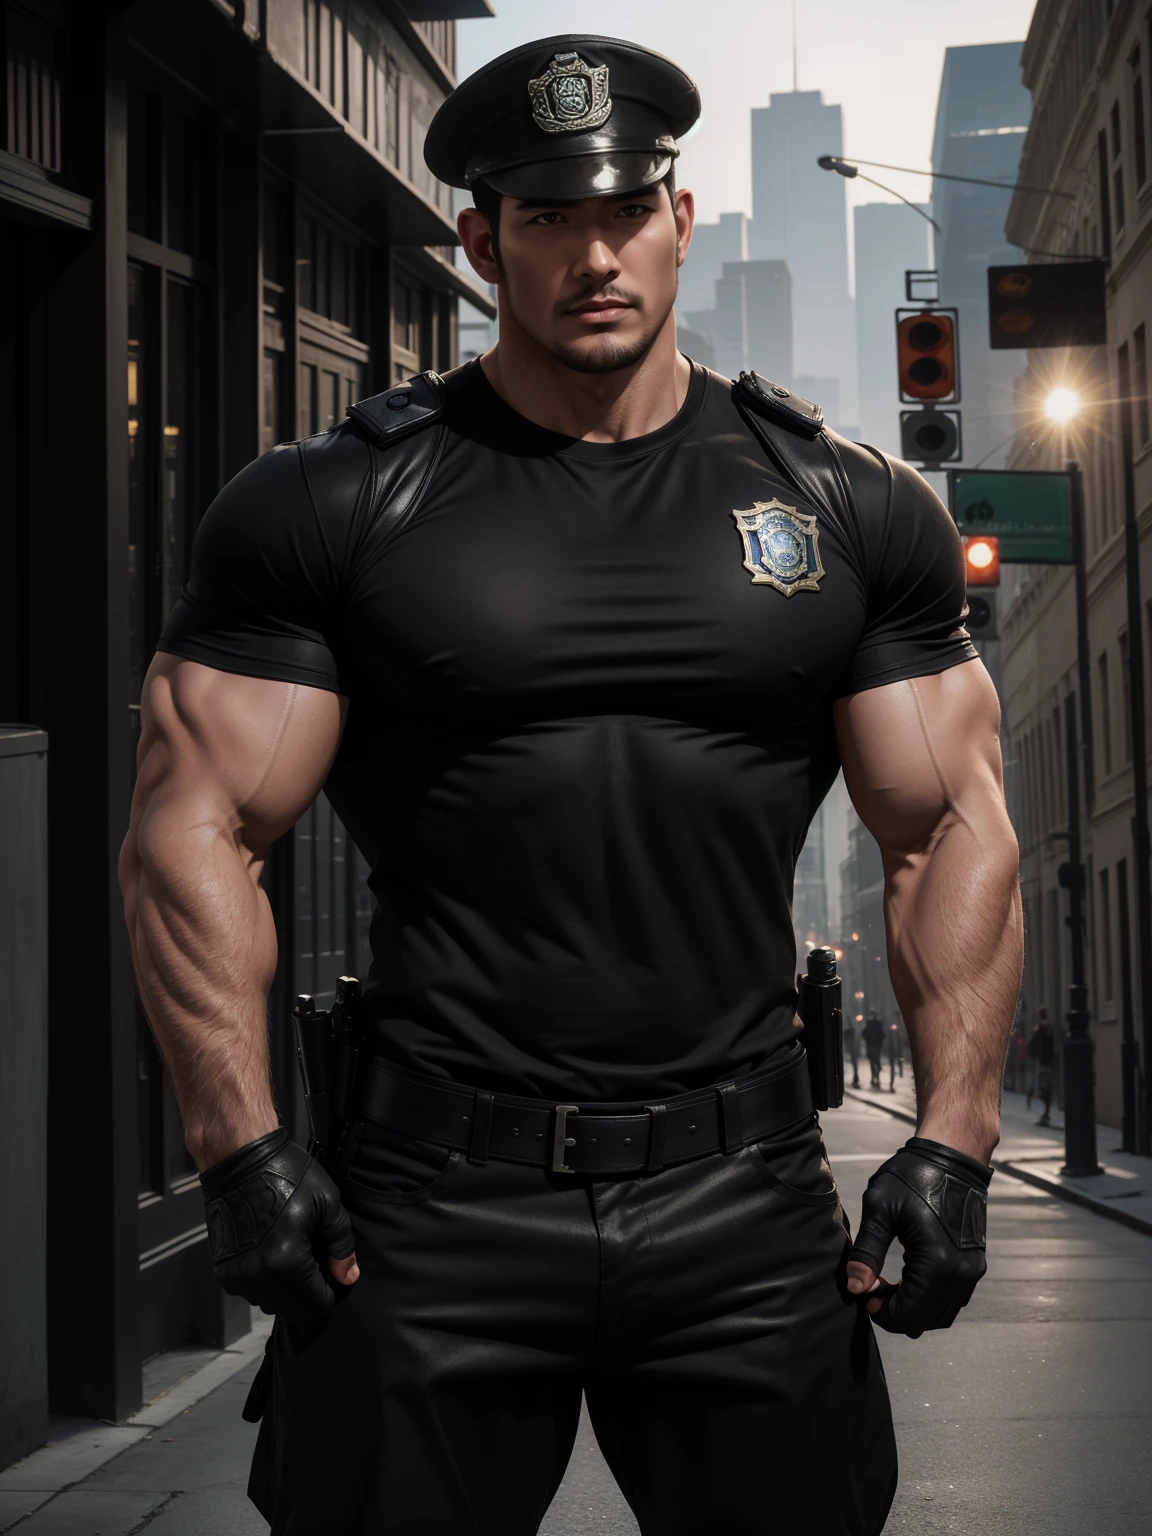 One Tall giant мускулистый police officer, Китайская полицейская шляпа, Большая черная маска,  На открытой улице, Коричневая футболка скинни, Выражение высокомерное, Поднимите подбородок, растрепанные волосы, толстые бедра, Коричневая футболка скинни, очень плотно, Правильный симметричный узор, Подчеркните мышцы, Штаны в полицейской форме, концепция персонажа（Resident Evil - Крис Редфилд, Крис Редфилд）гордое выражение, Глубокие и очаровательные глаза, героическая мужская поза, tall Крепкий, мускулистый！мускулистый thighs, крутой парень, Идеальные черты лица, высокий, Крепкий, Хэцян, Супер усиление и круто, комитет высокого разрешения, Очаровательный сильный мужчина, Солнце пылает, Ослепительный